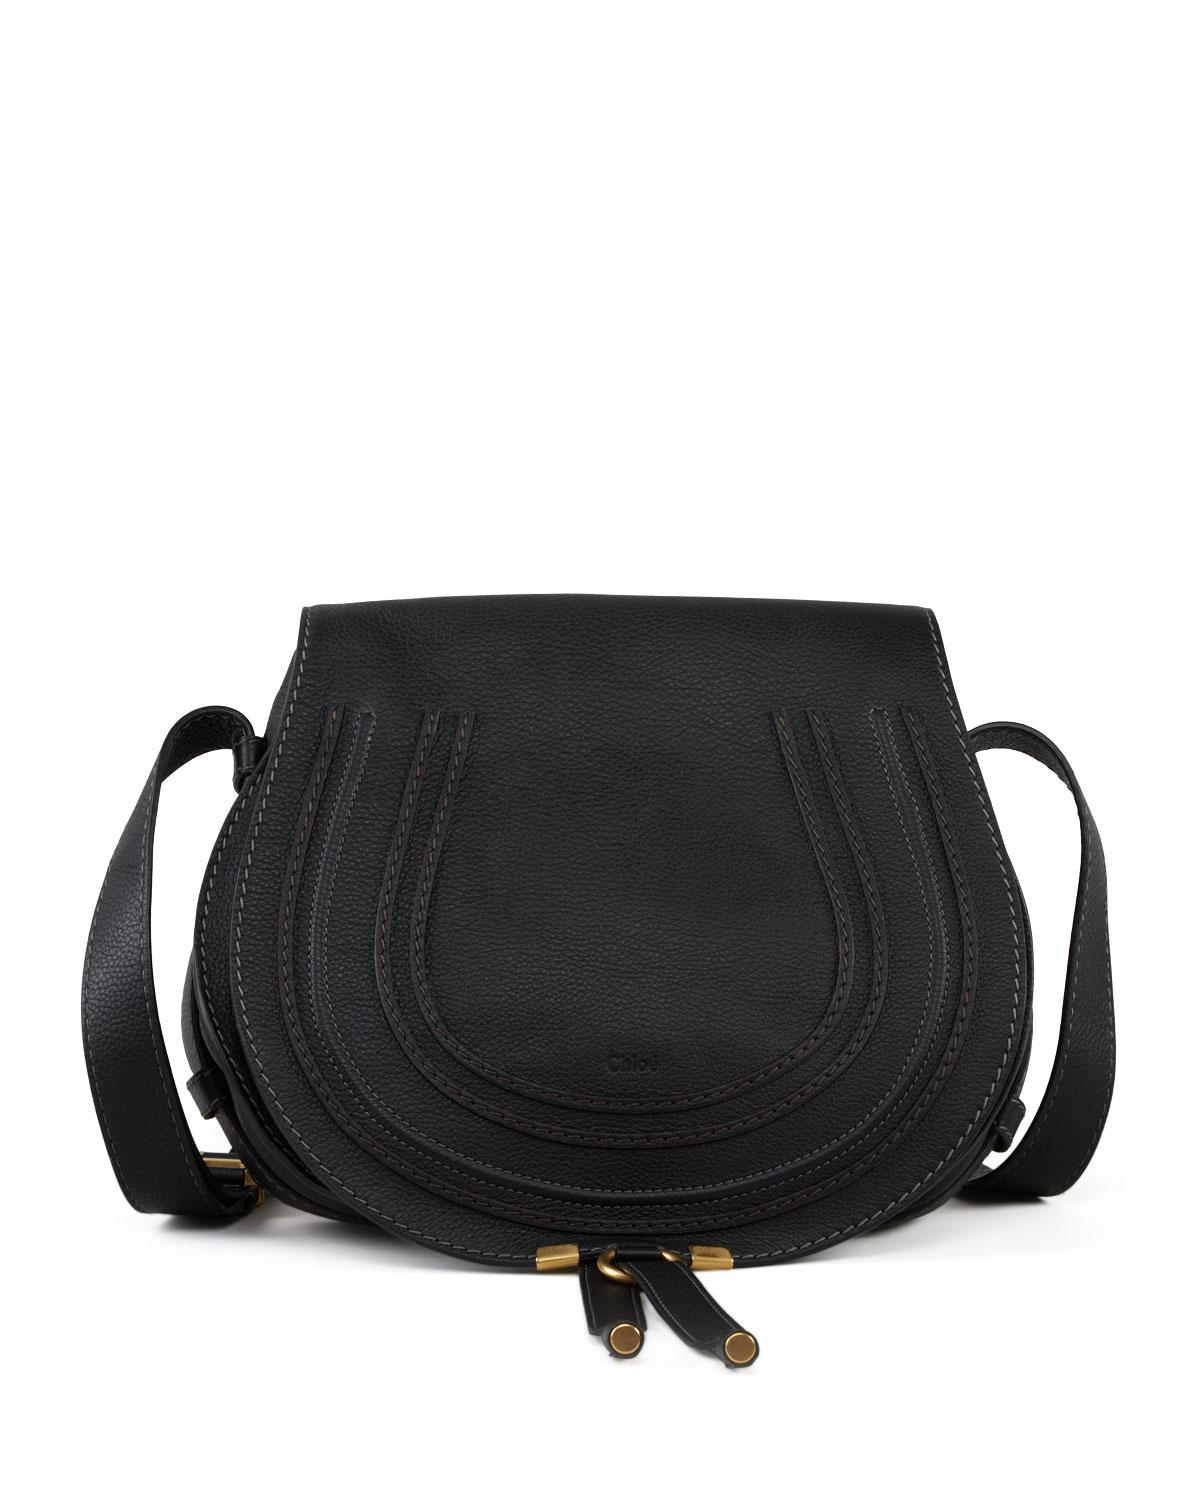 Lyst - Chloé Marcie Medium Leather Crossbody Bag in Black